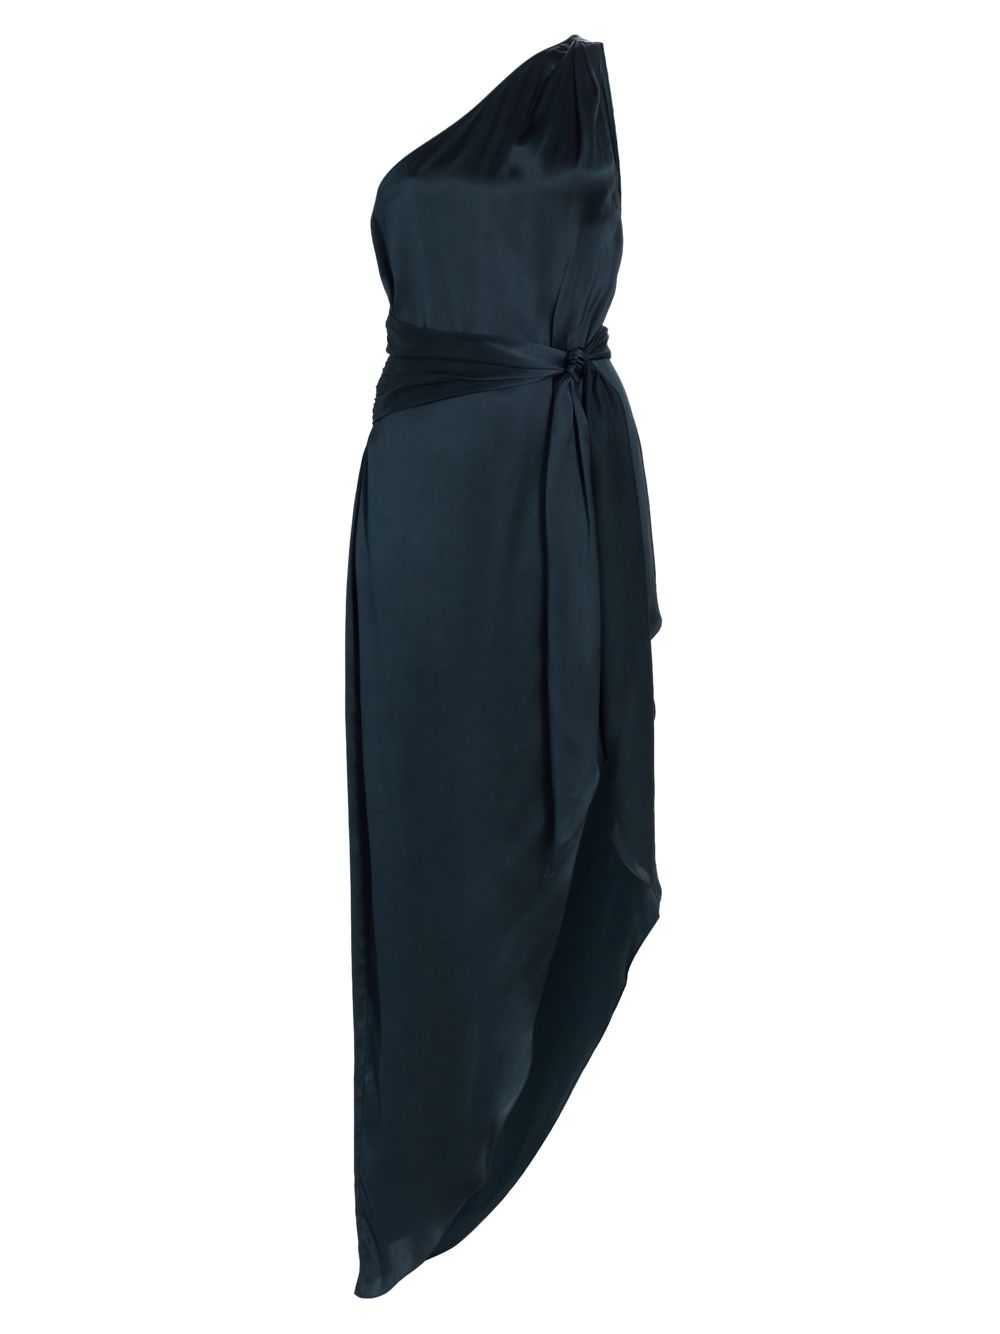 Шелковое макси-платье Palmira на одно плечо Amanda Uprichard ярусное шелковое платье auryn на одно плечо ulla johnson